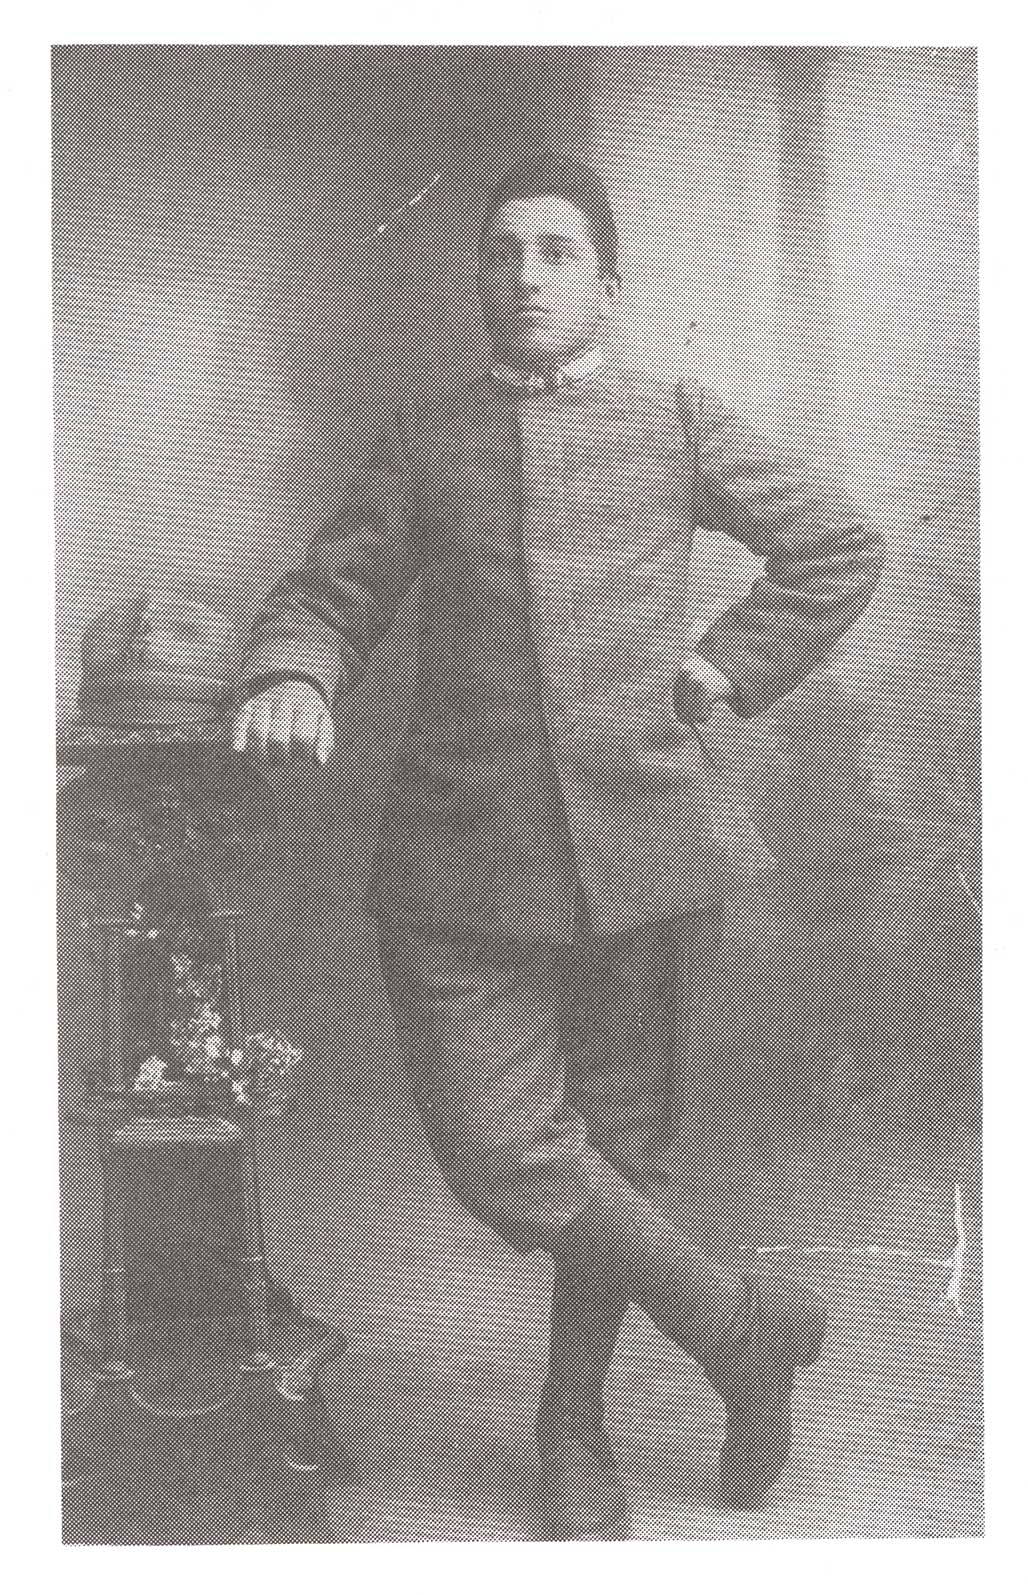 Très vieille image d’un jeune garçon debout avec ses jambes croisées et sa main repose sur une étagère.